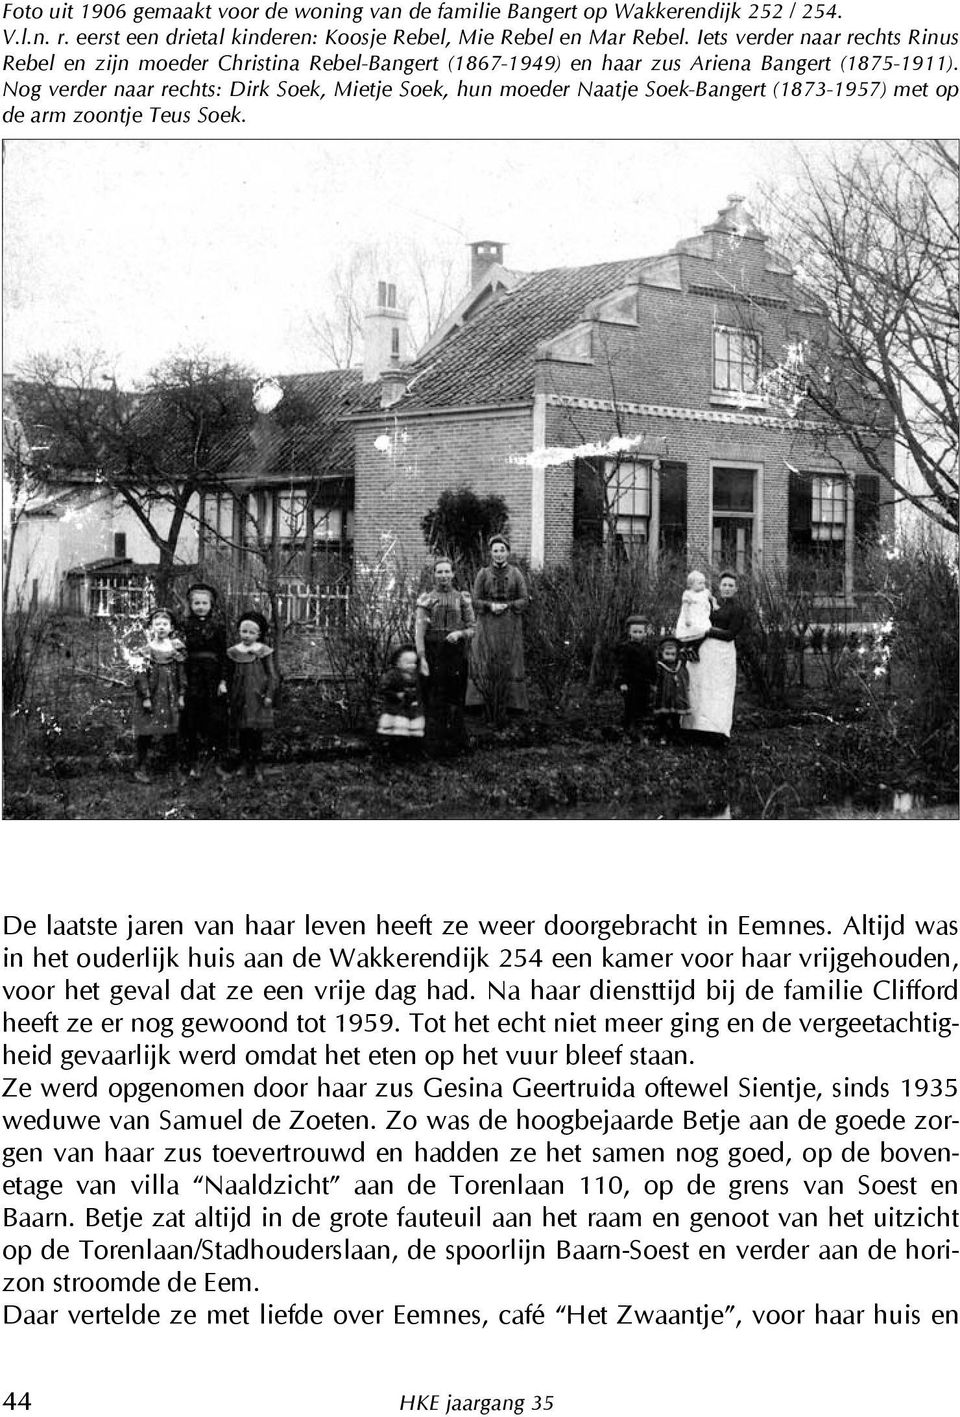 Nog verder naar rechts: Dirk Soek, Mietje Soek, hun moeder Naatje Soek-Bangert (1873-1957) met op de arm zoontje Teus Soek. De laatste jaren van haar leven heeft ze weer doorgebracht in Eemnes.